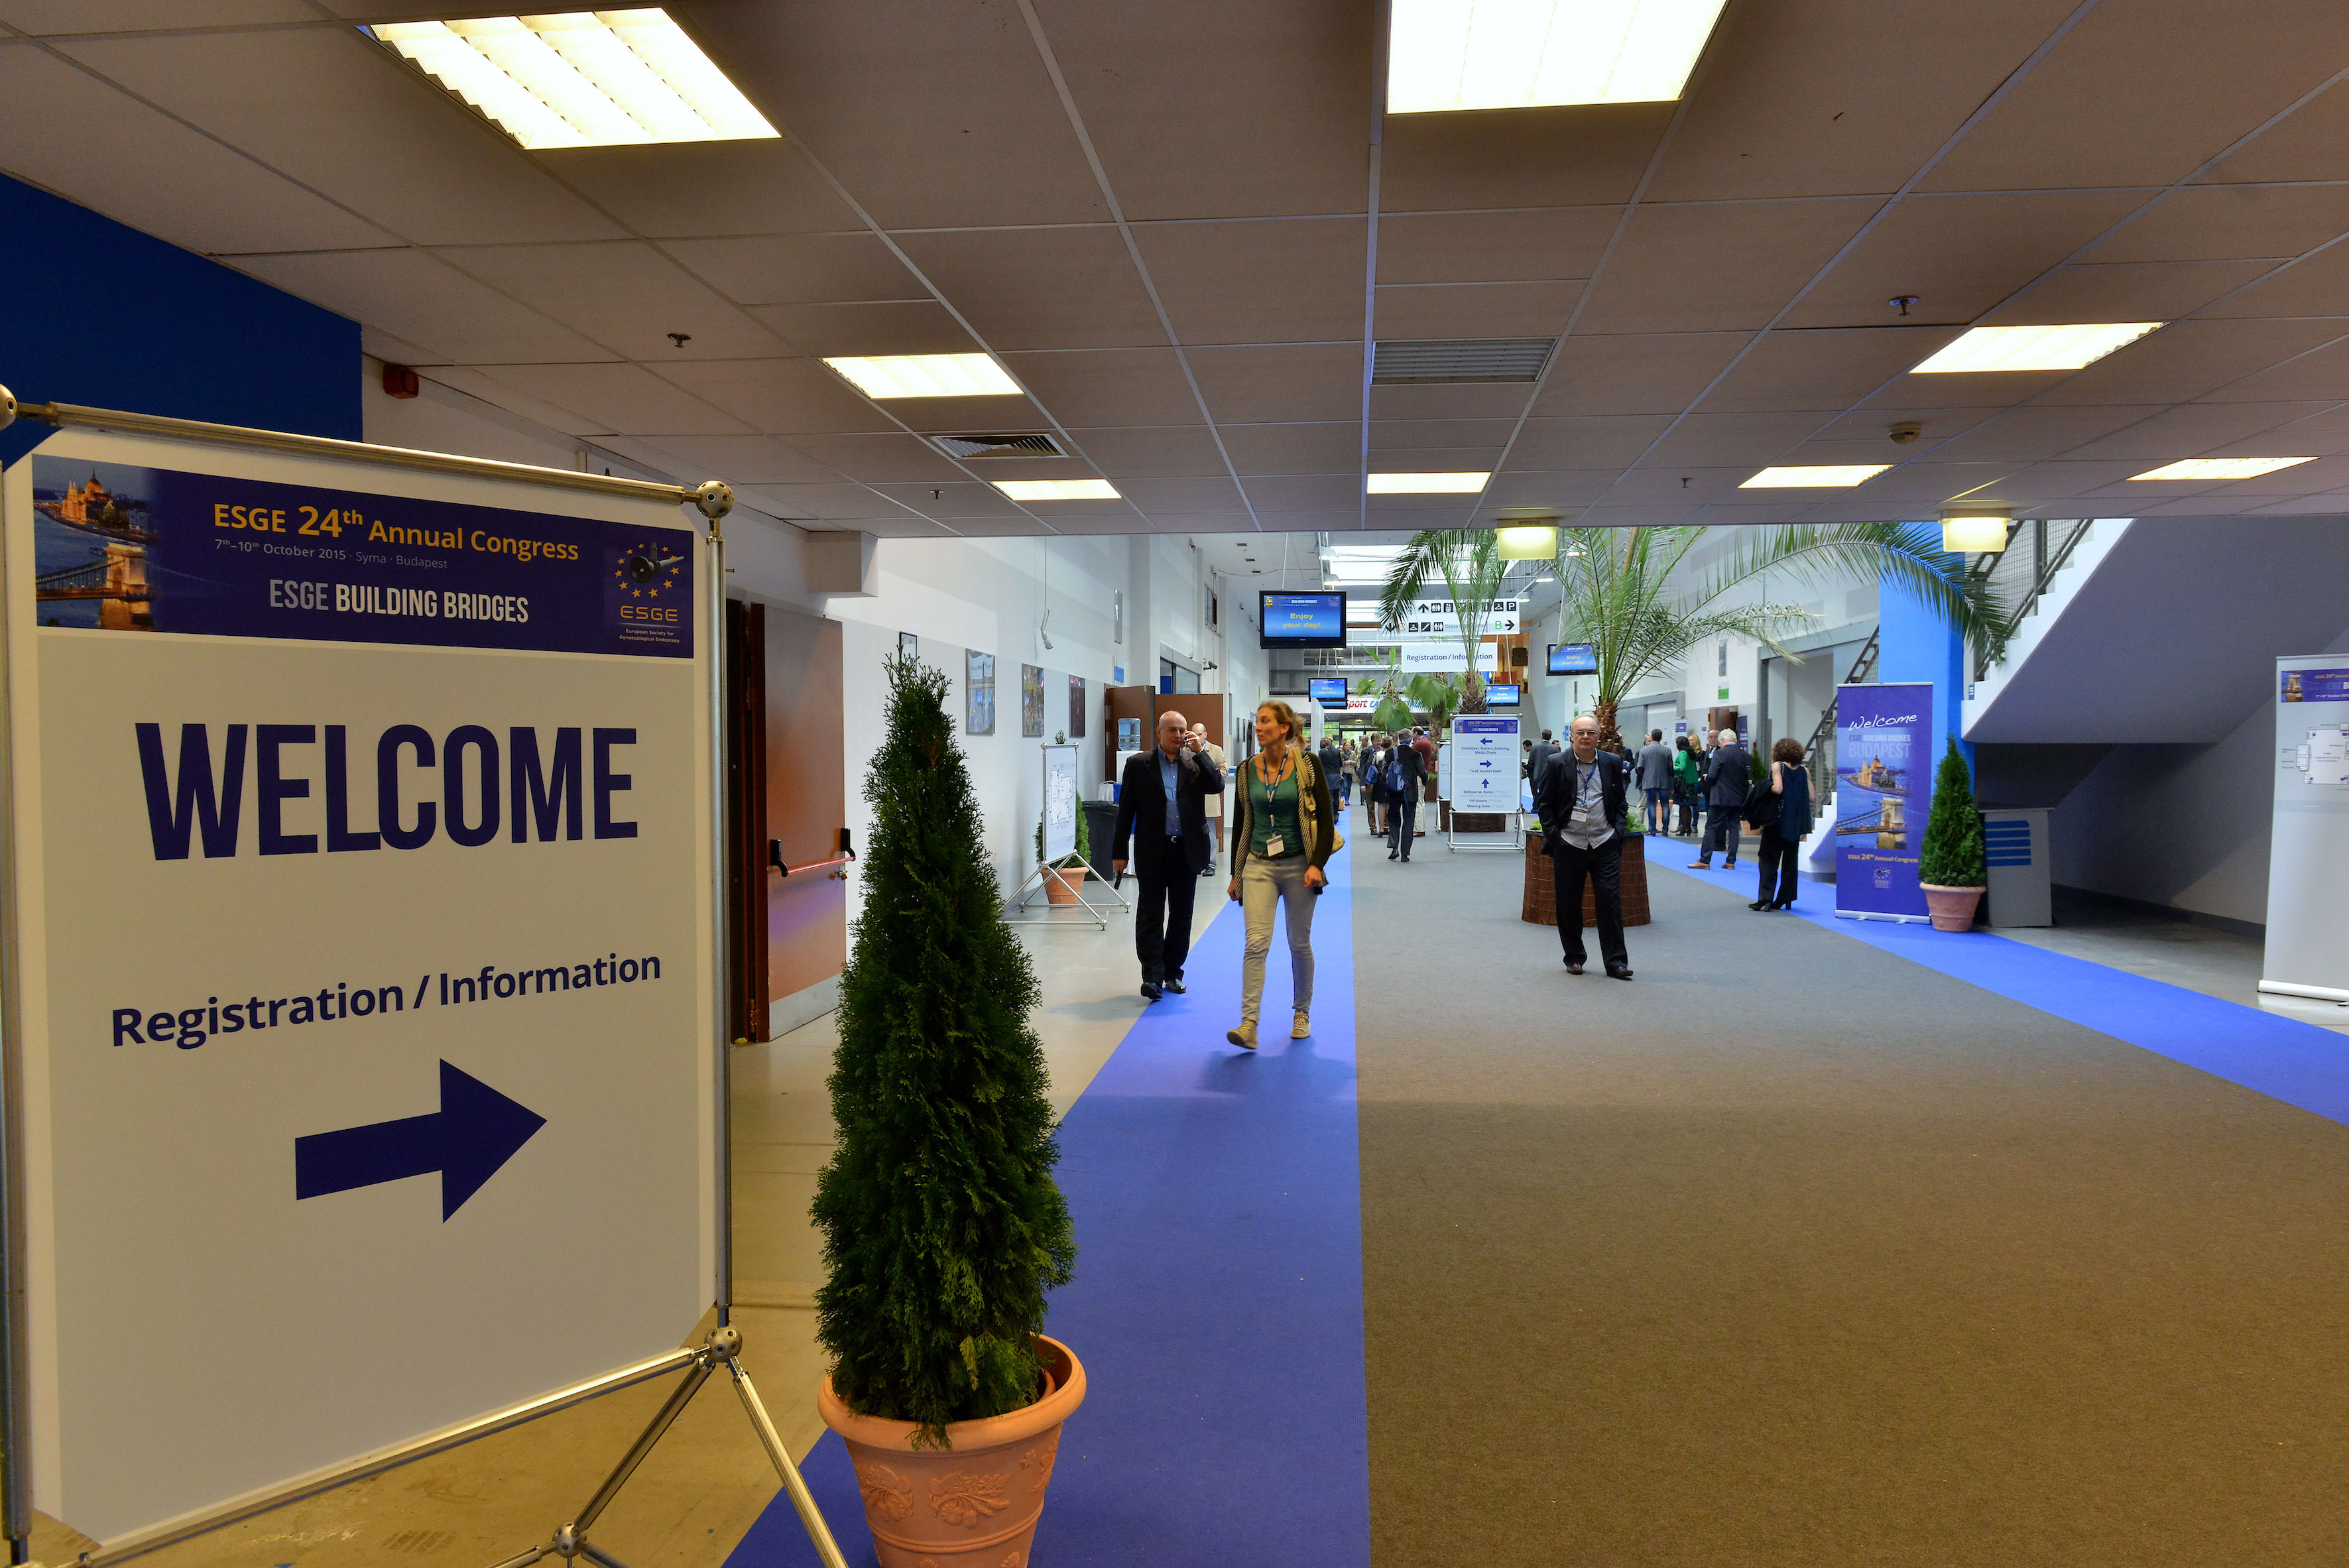 Budapest congress hall / ESGE congress 2015